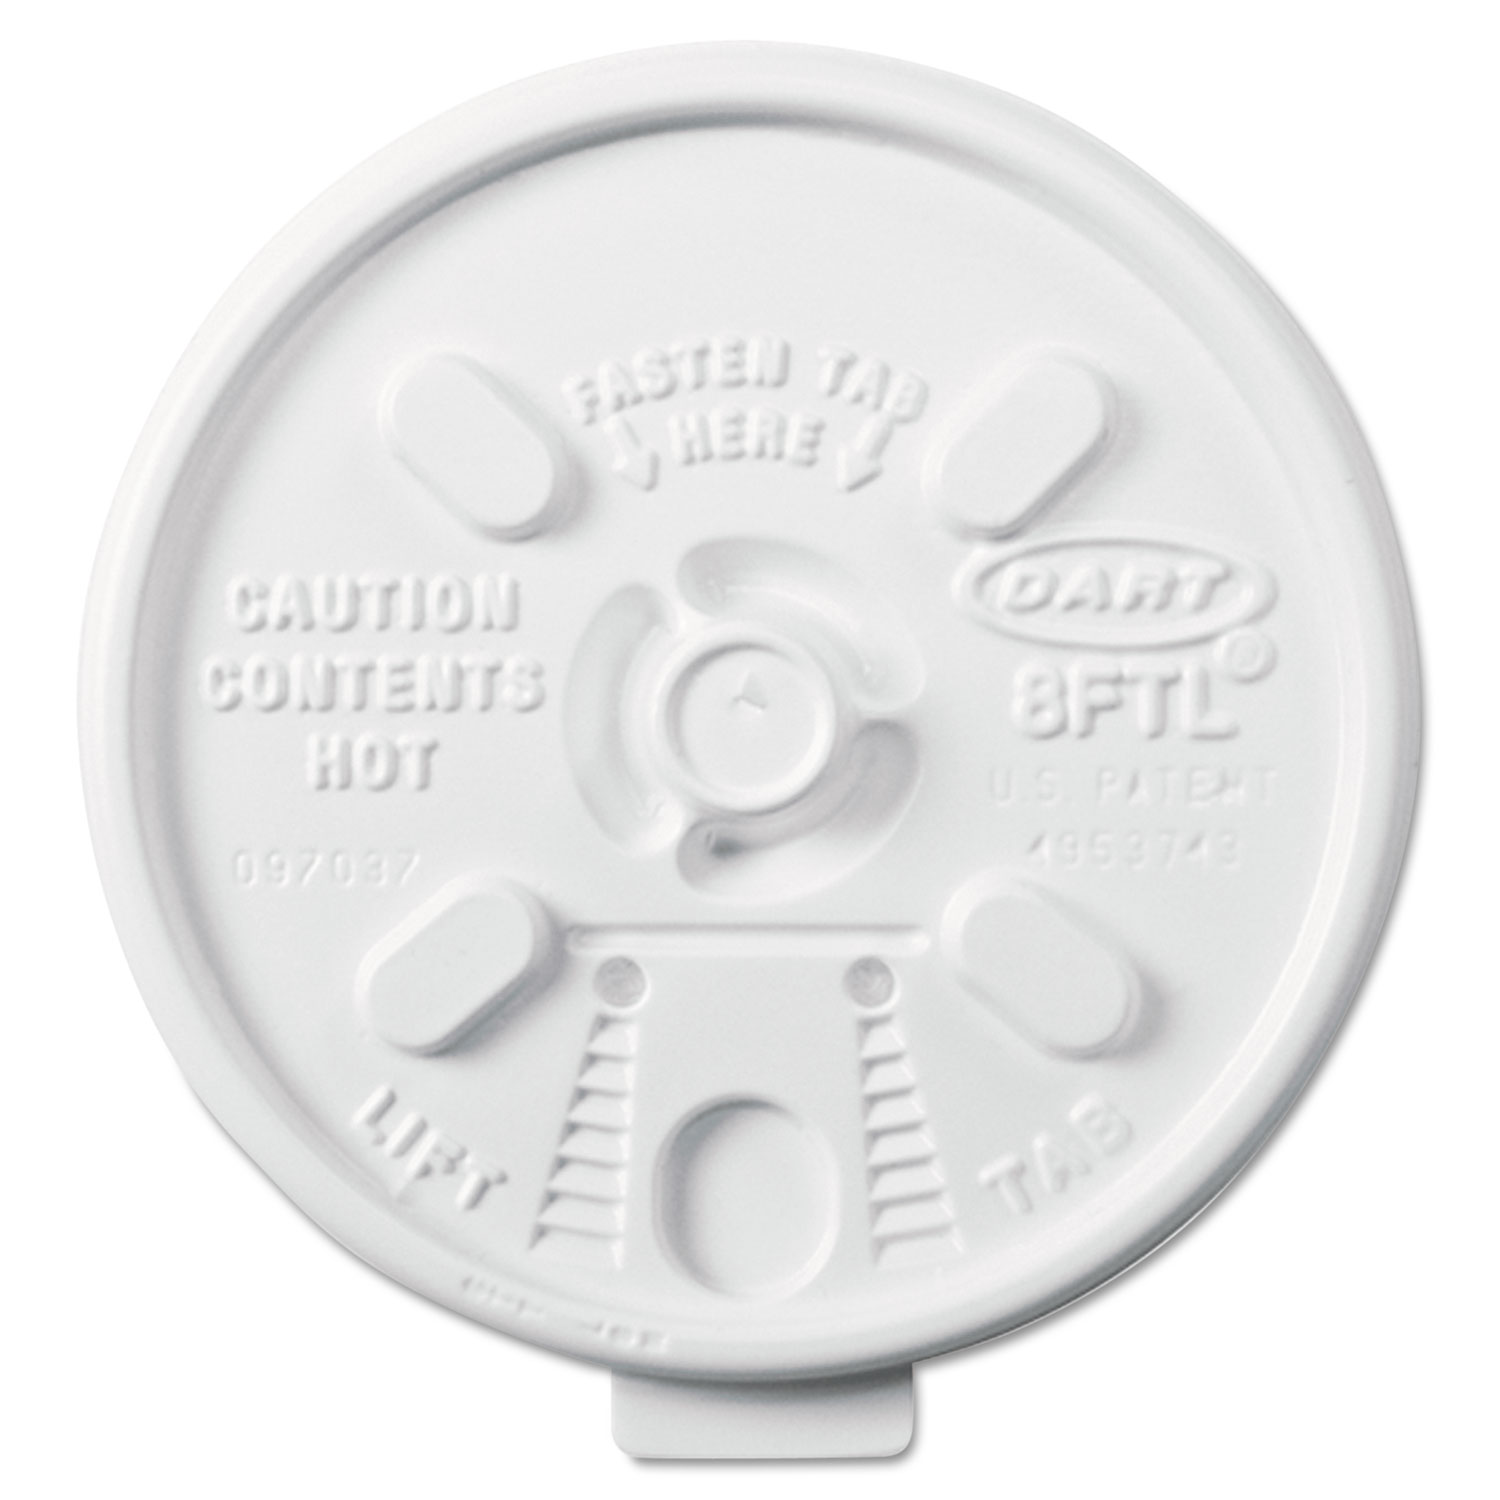  Dart 8FTL Lift n' Lock Plastic Hot Cup Lids, 6-10oz Cups, White, 1000/Carton (DCC8FTL) 